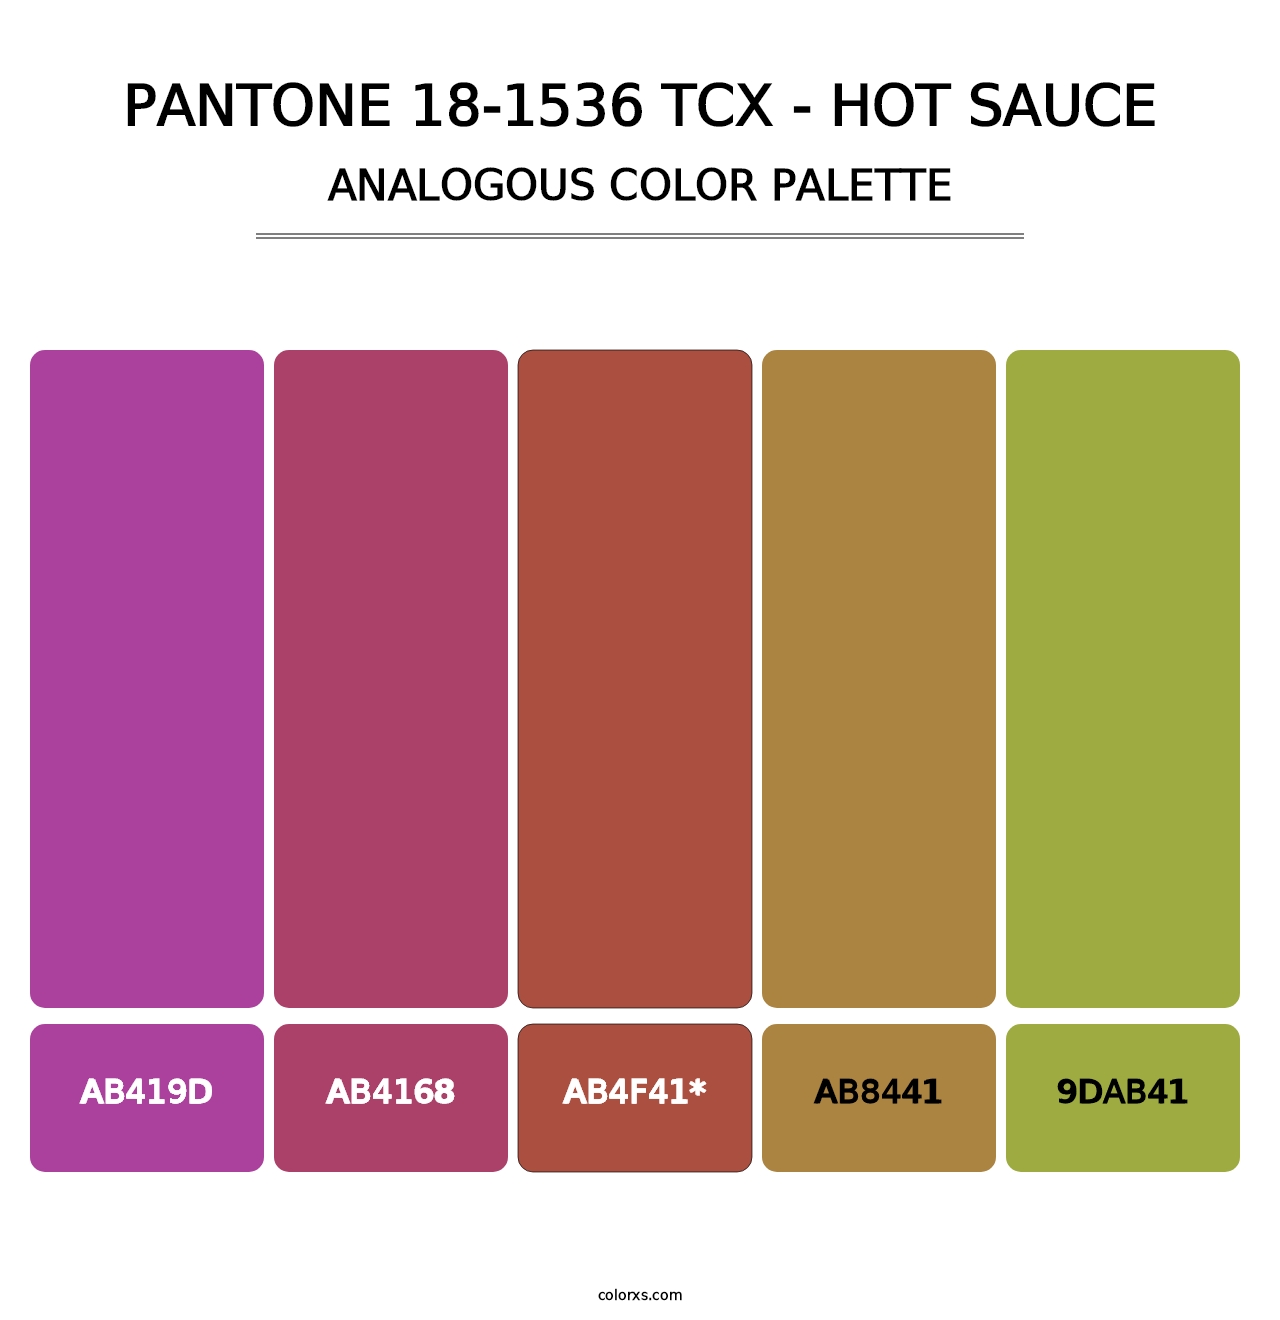 PANTONE 18-1536 TCX - Hot Sauce - Analogous Color Palette